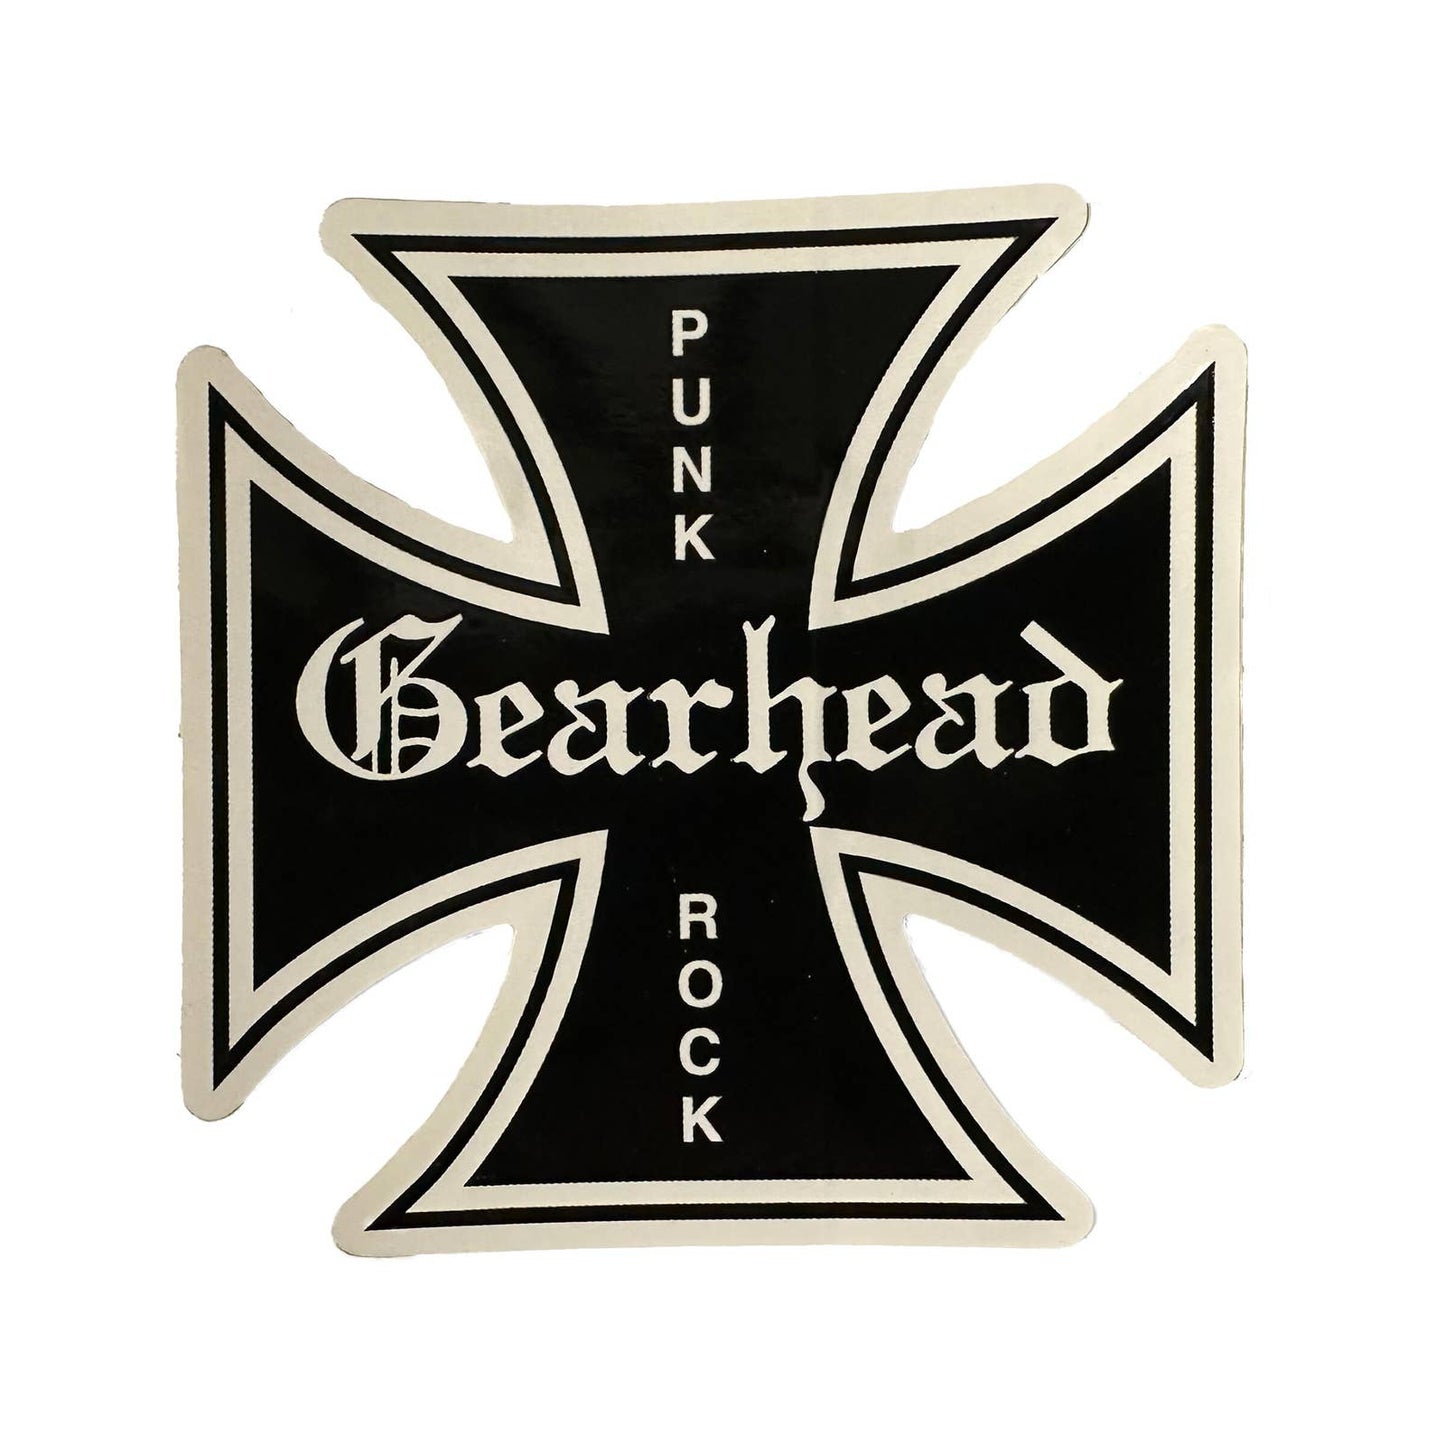 Gearhead Punk Rock Iron Cross Sticker